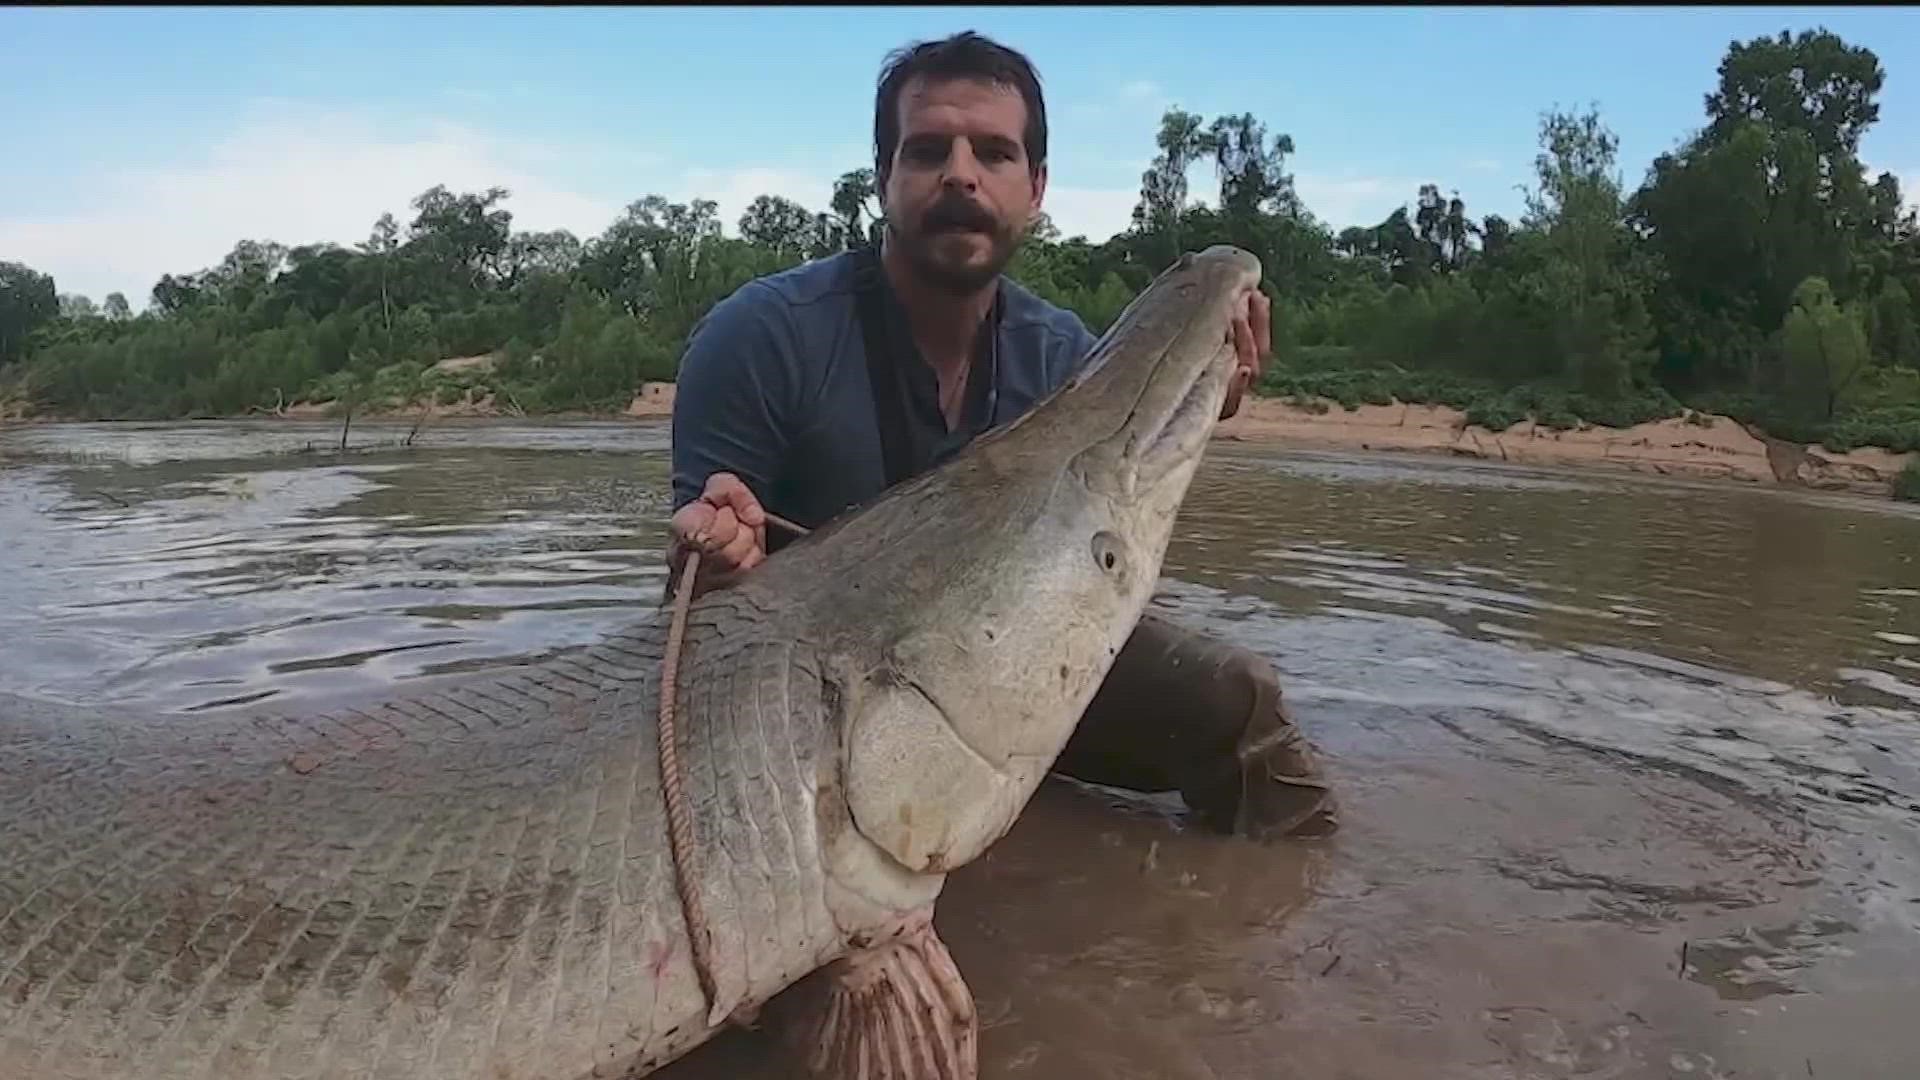 How big? An estimated 300-pound alligator gar in a Houston bayou.